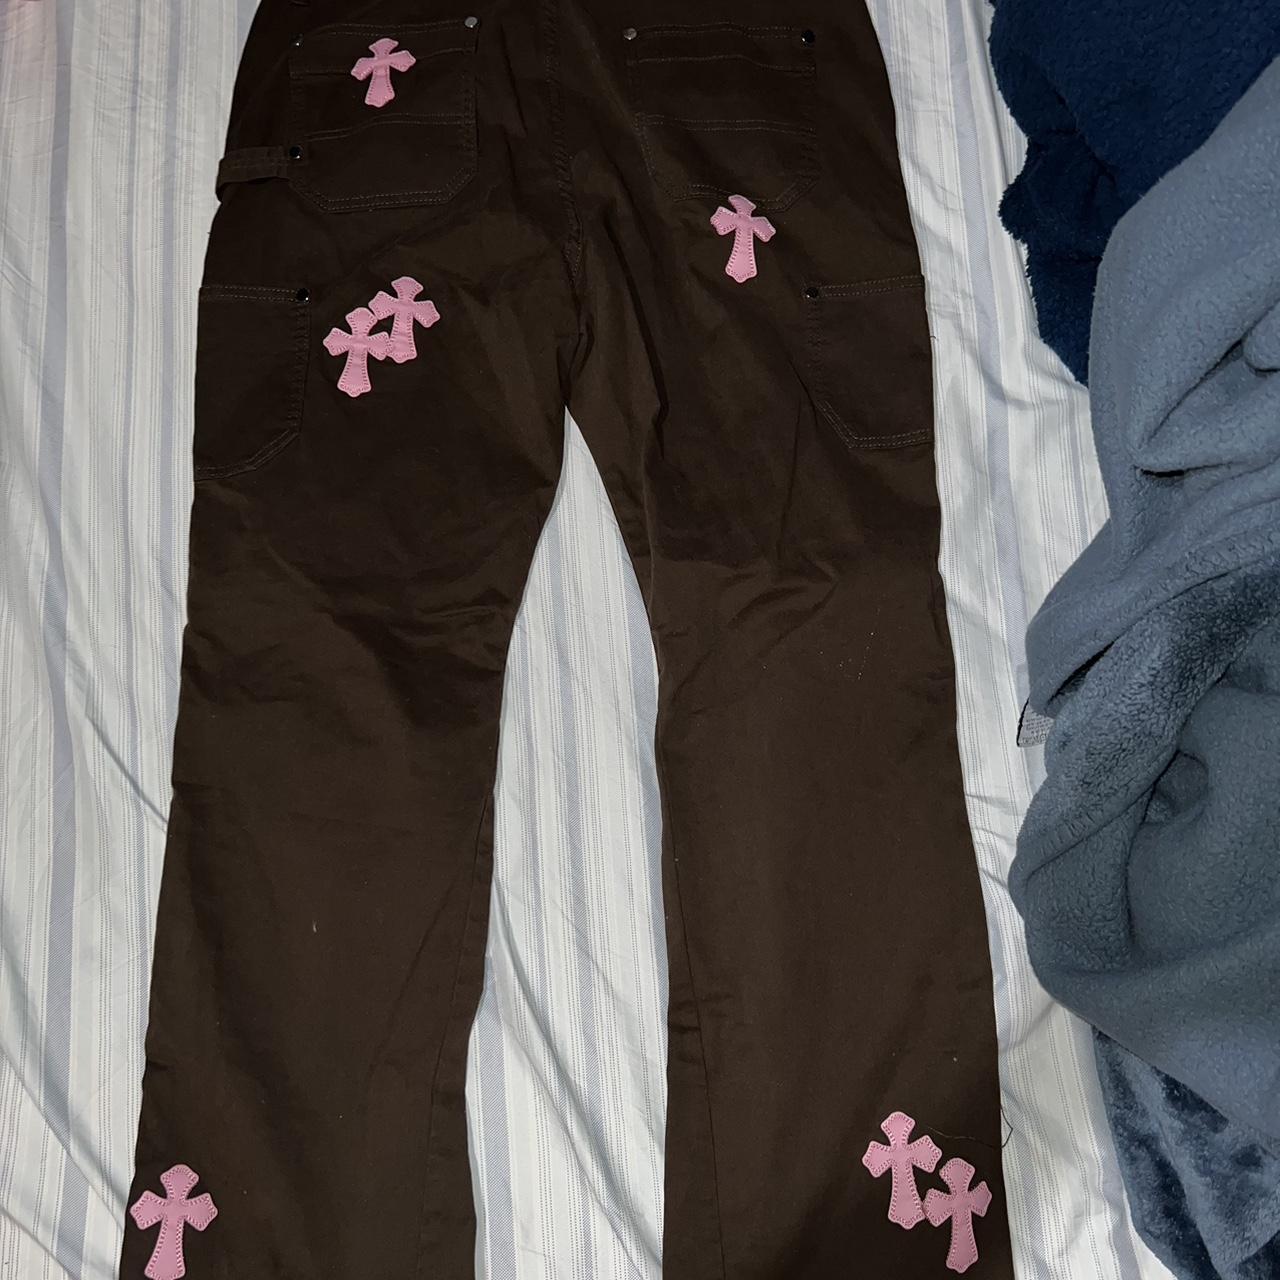 fire brown pants with pink crosses #y2k - Depop